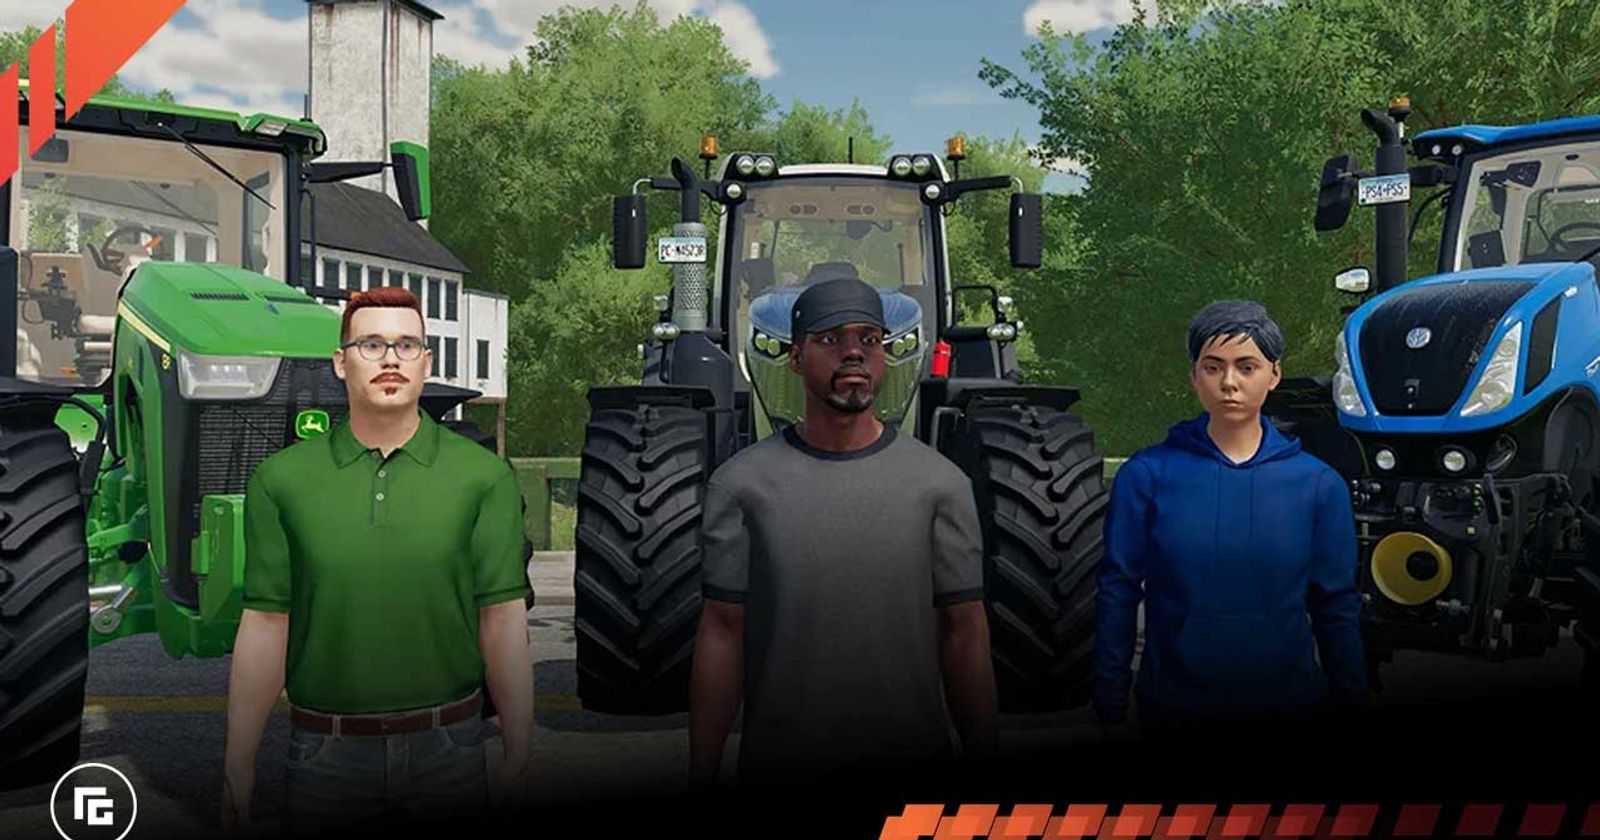 Farming Simulator 19 PS4